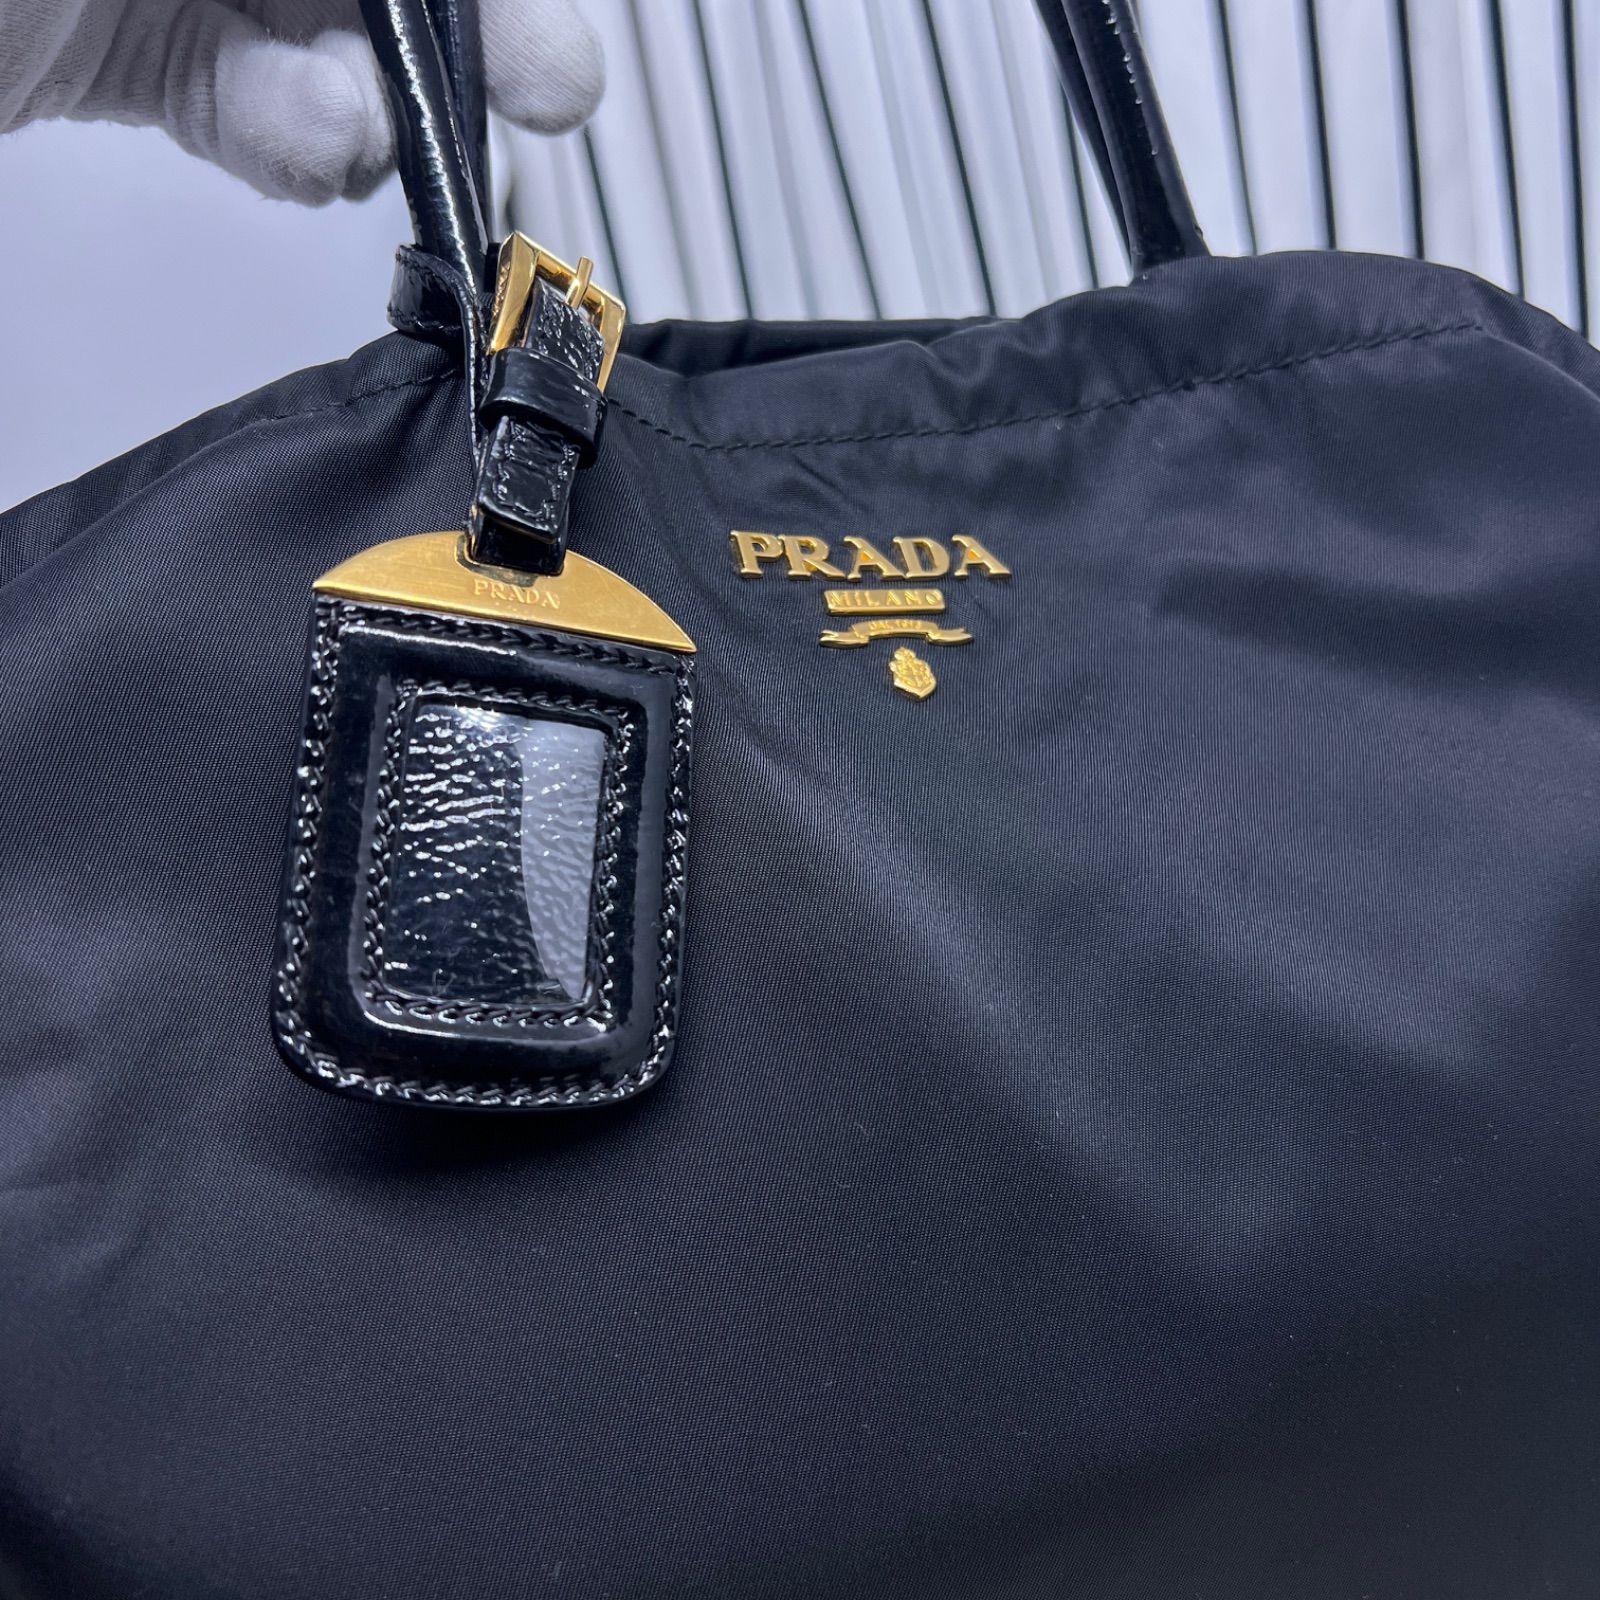 値段交渉受け付け 【美品】PRADA×プラダ A4収納可能金色プレートトートバッグ トートバッグ